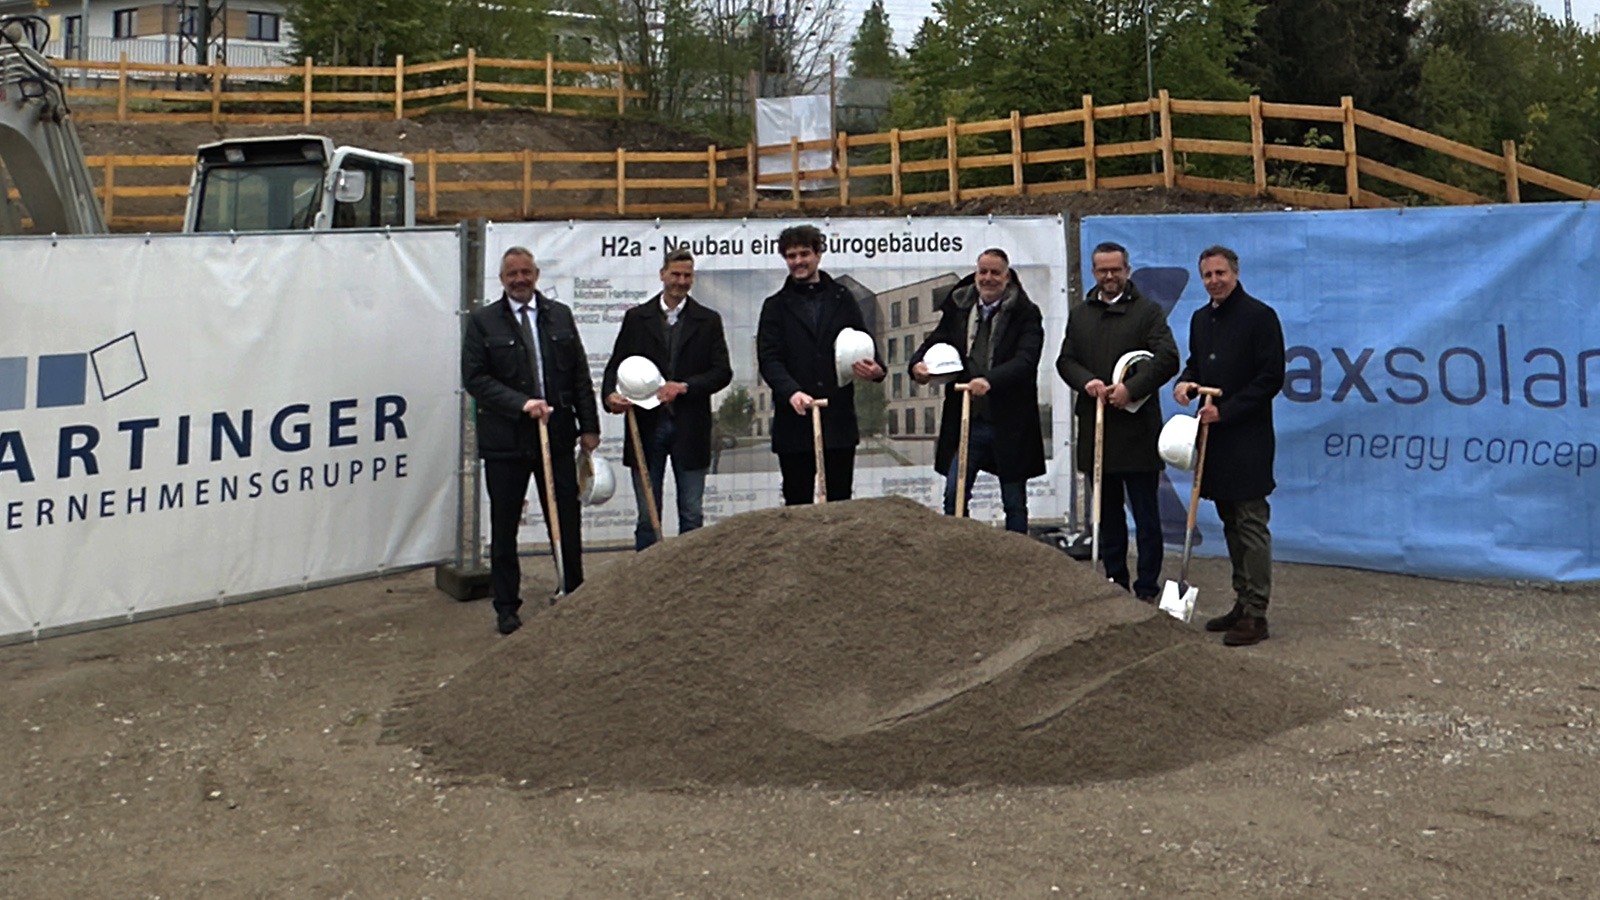 Spatenstich der Hartinger Unternehmensgruppe: Mit dem Bau der neuen Firmenzentrale für MaxSolar in Traunstein wurde begonnen